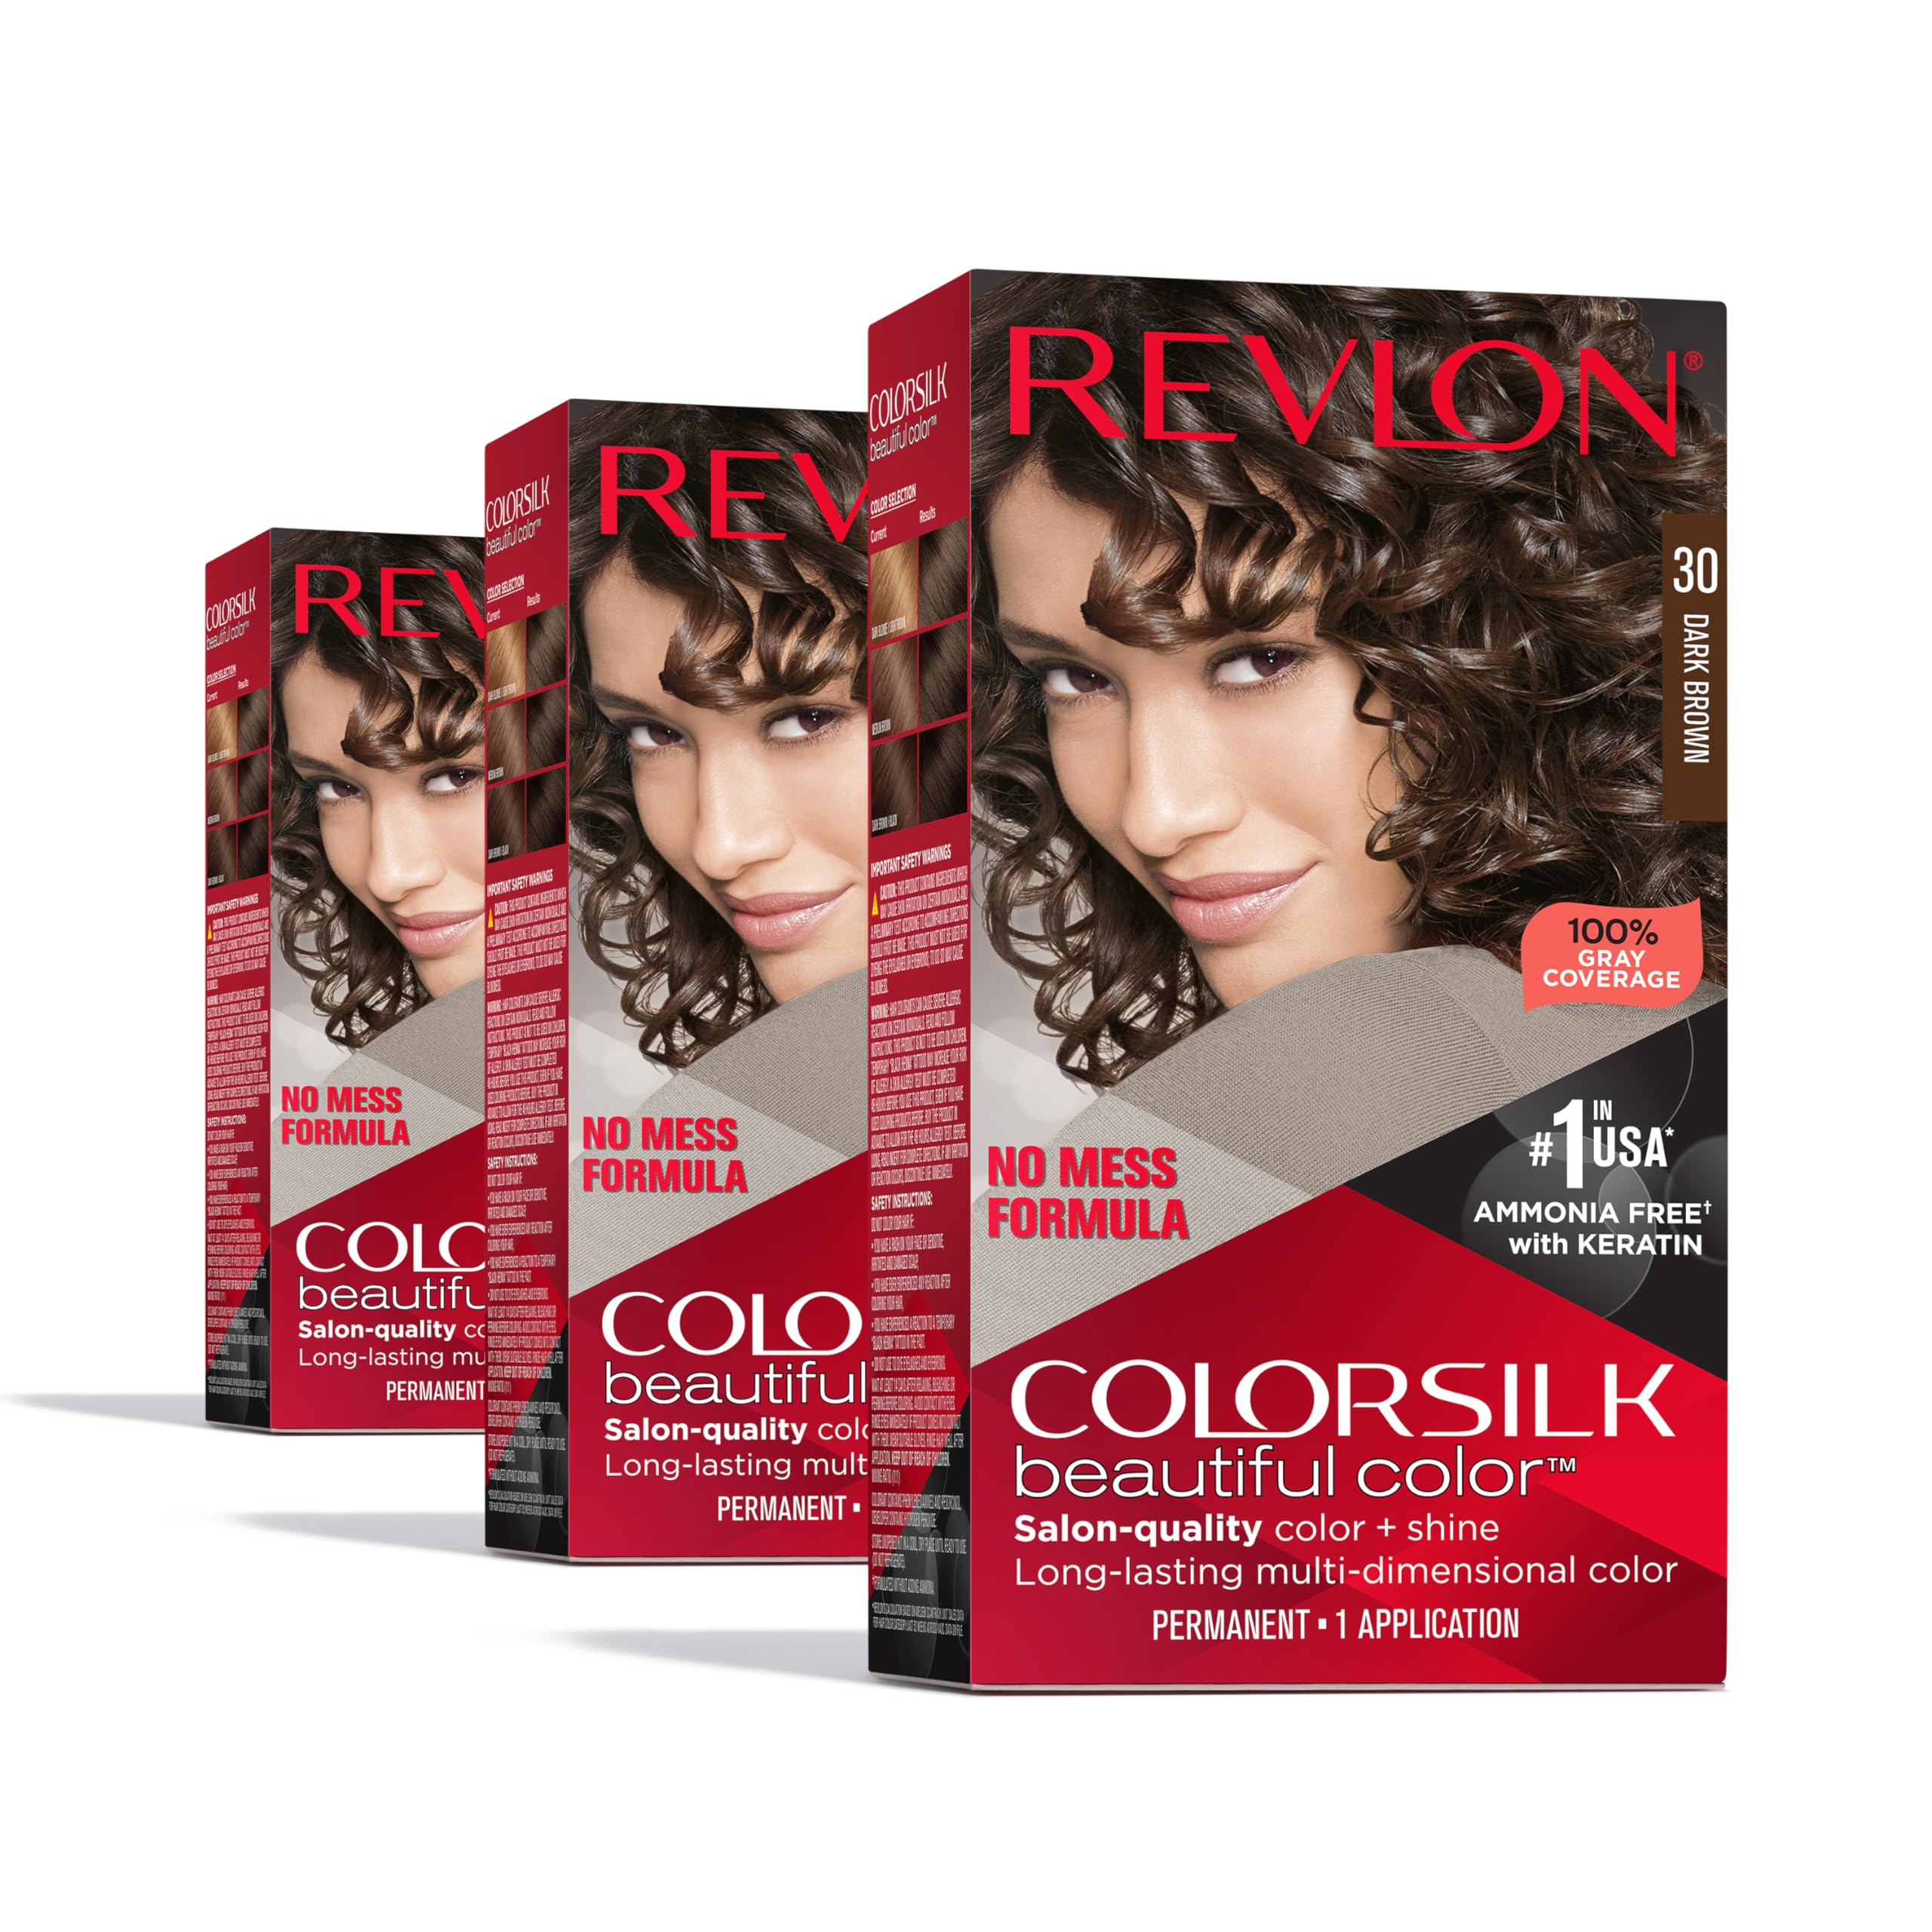 Revlon ColorSilk Permanent Hair Color 3-pack for $6.47 ($2.16 each)